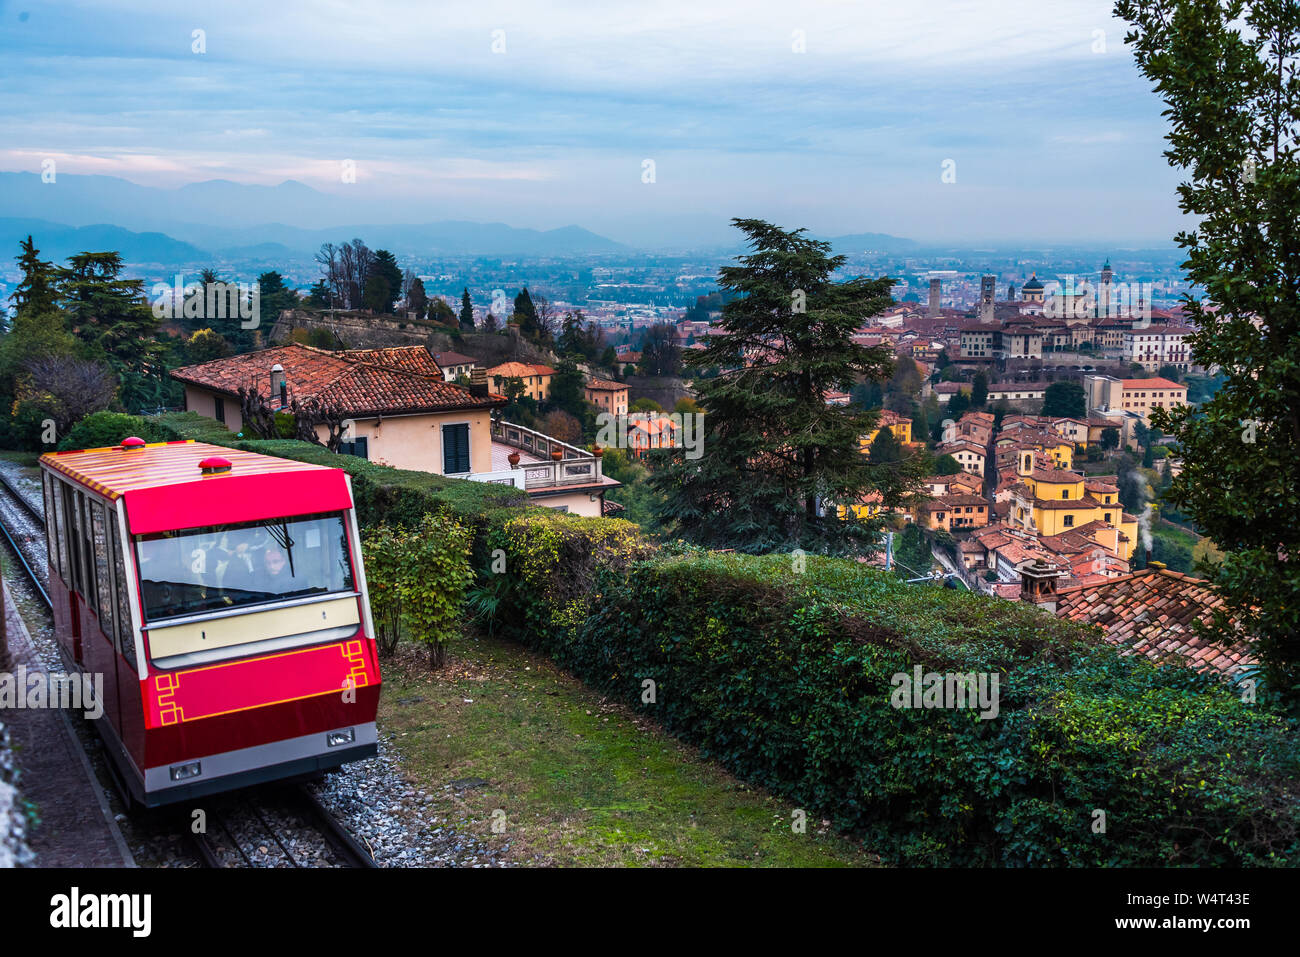 Bergamo, Italy, 21/11-18. The classic Funicolare making its way up to the hill of Castello di San Vigilio. Stock Photo